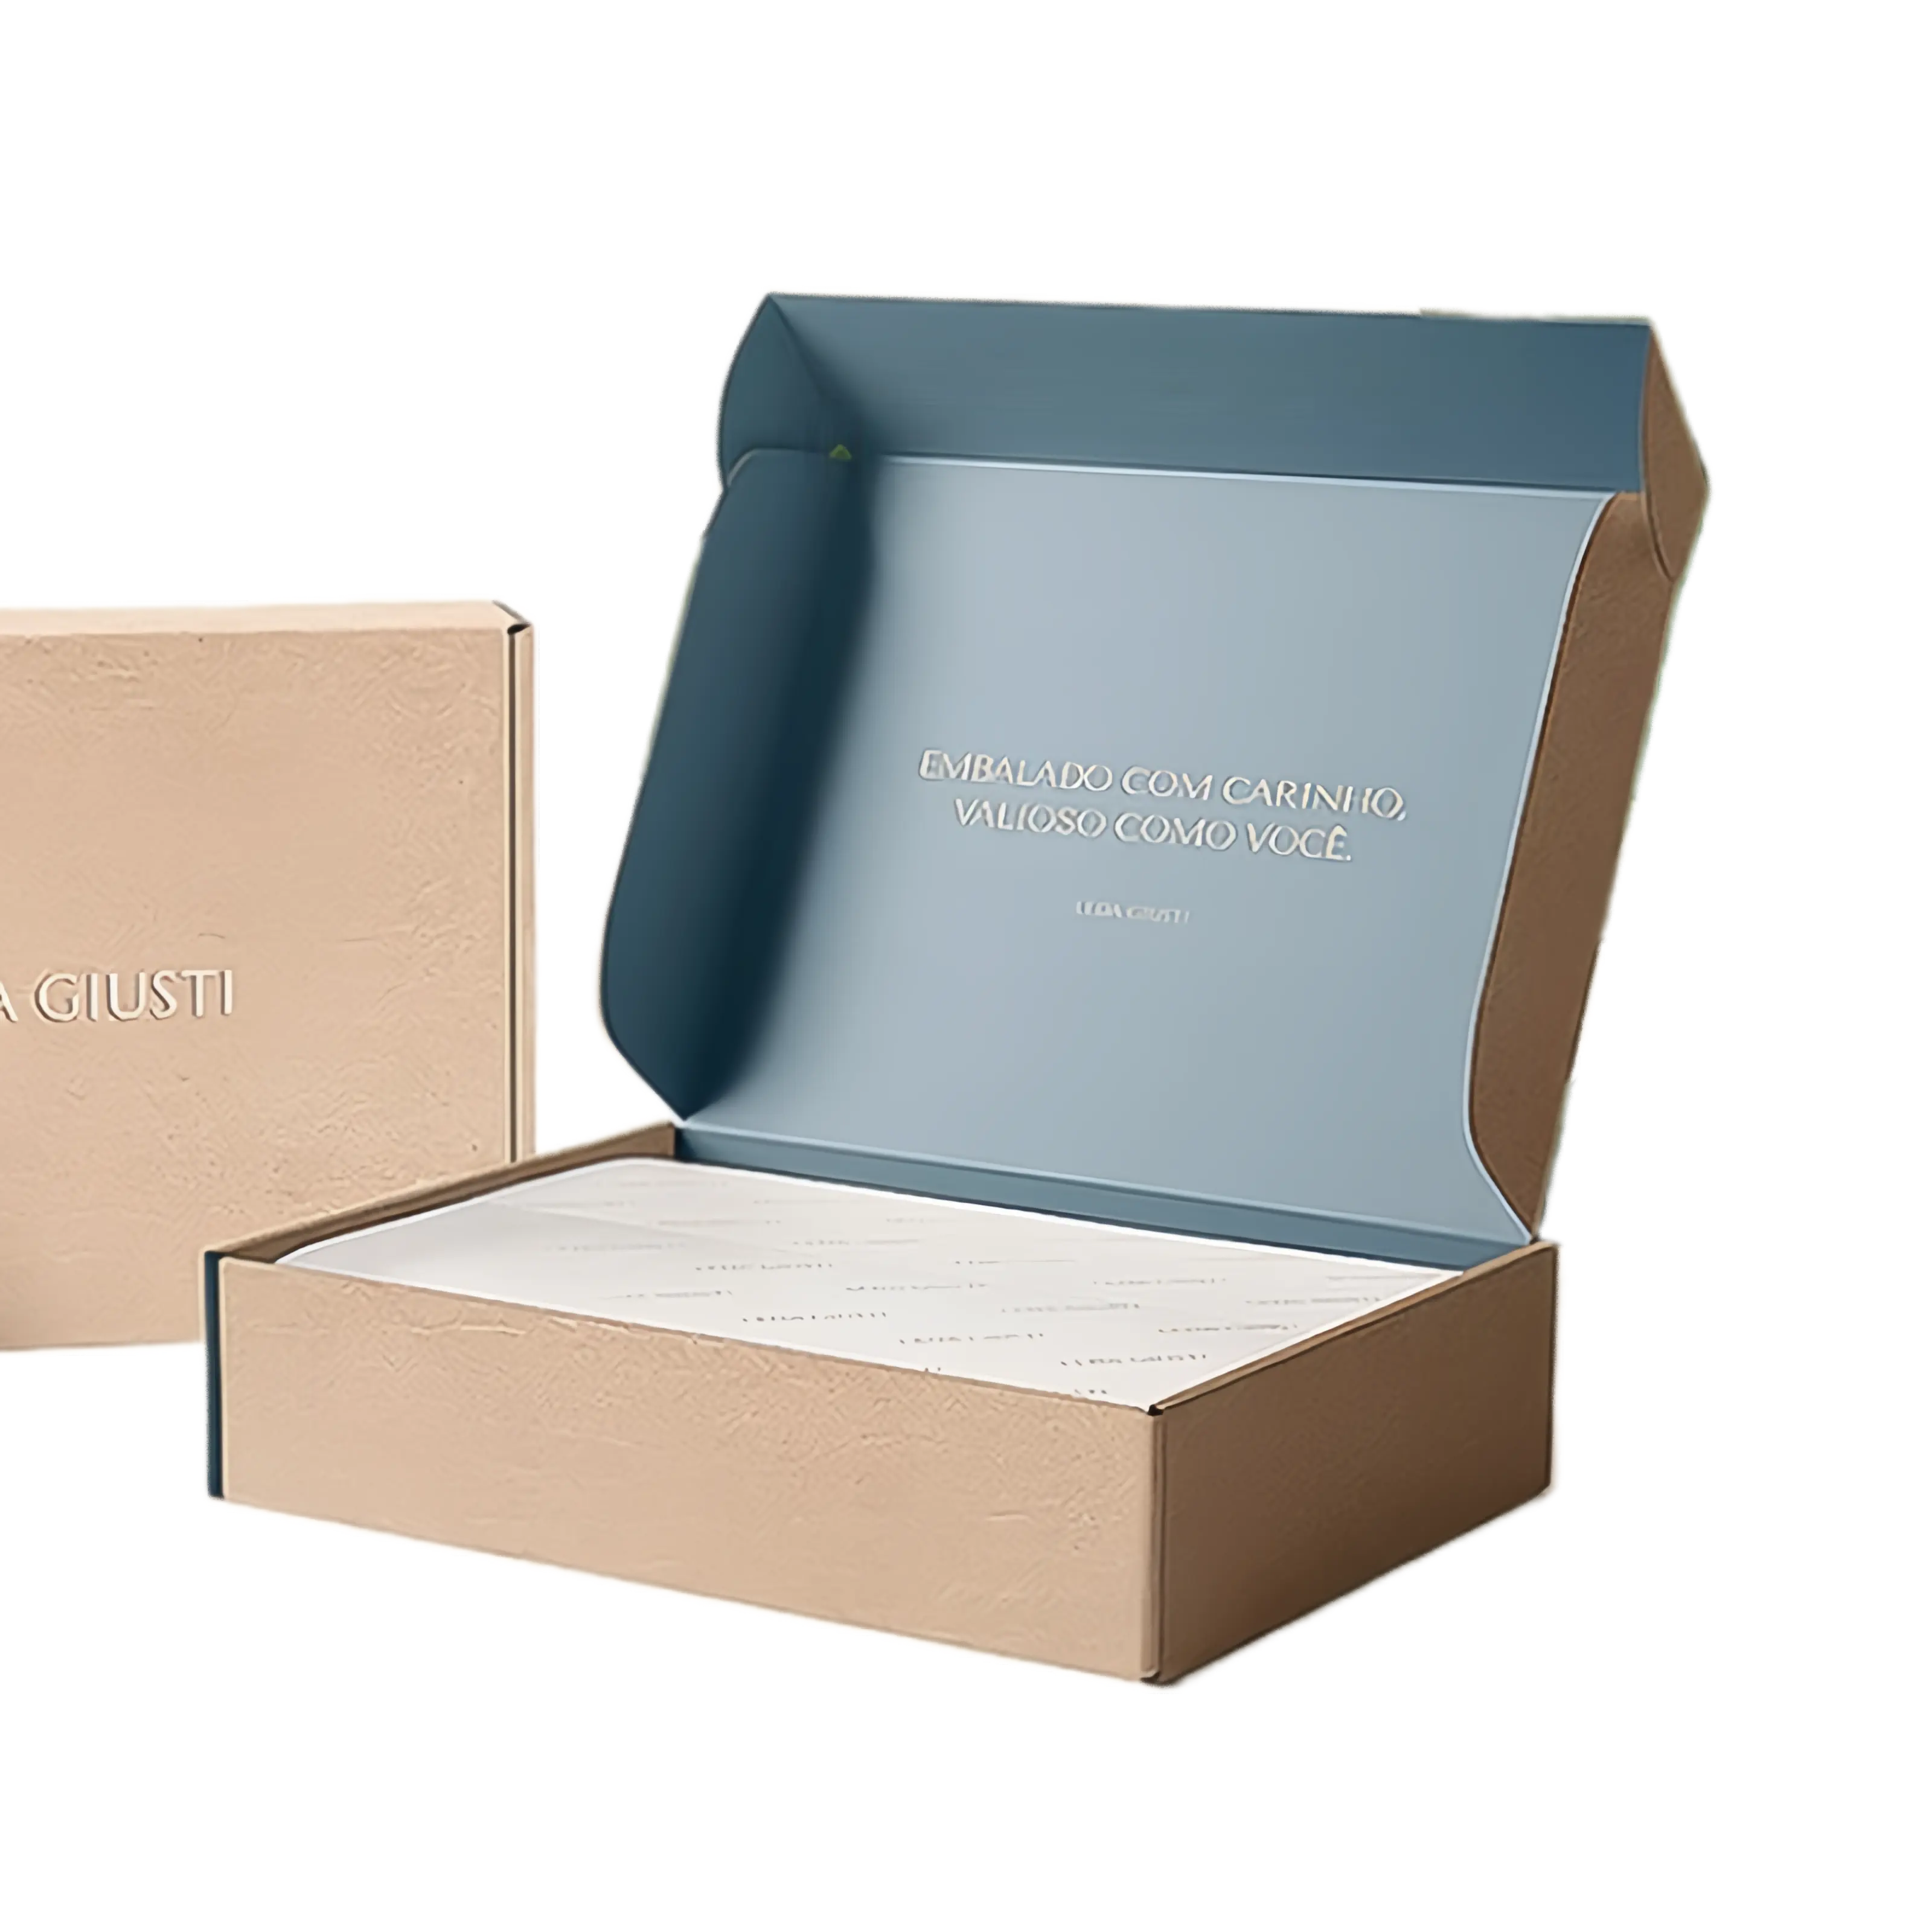 मेलिंग और शिपिंग और उपहार पैकेजिंग के लिए ग्लॉसी लेमिनेशन और यूवी कोटिंग के साथ लक्जरी कस्टम रीसाइक्लेबल कार्डबोर्ड उपहार बॉक्स